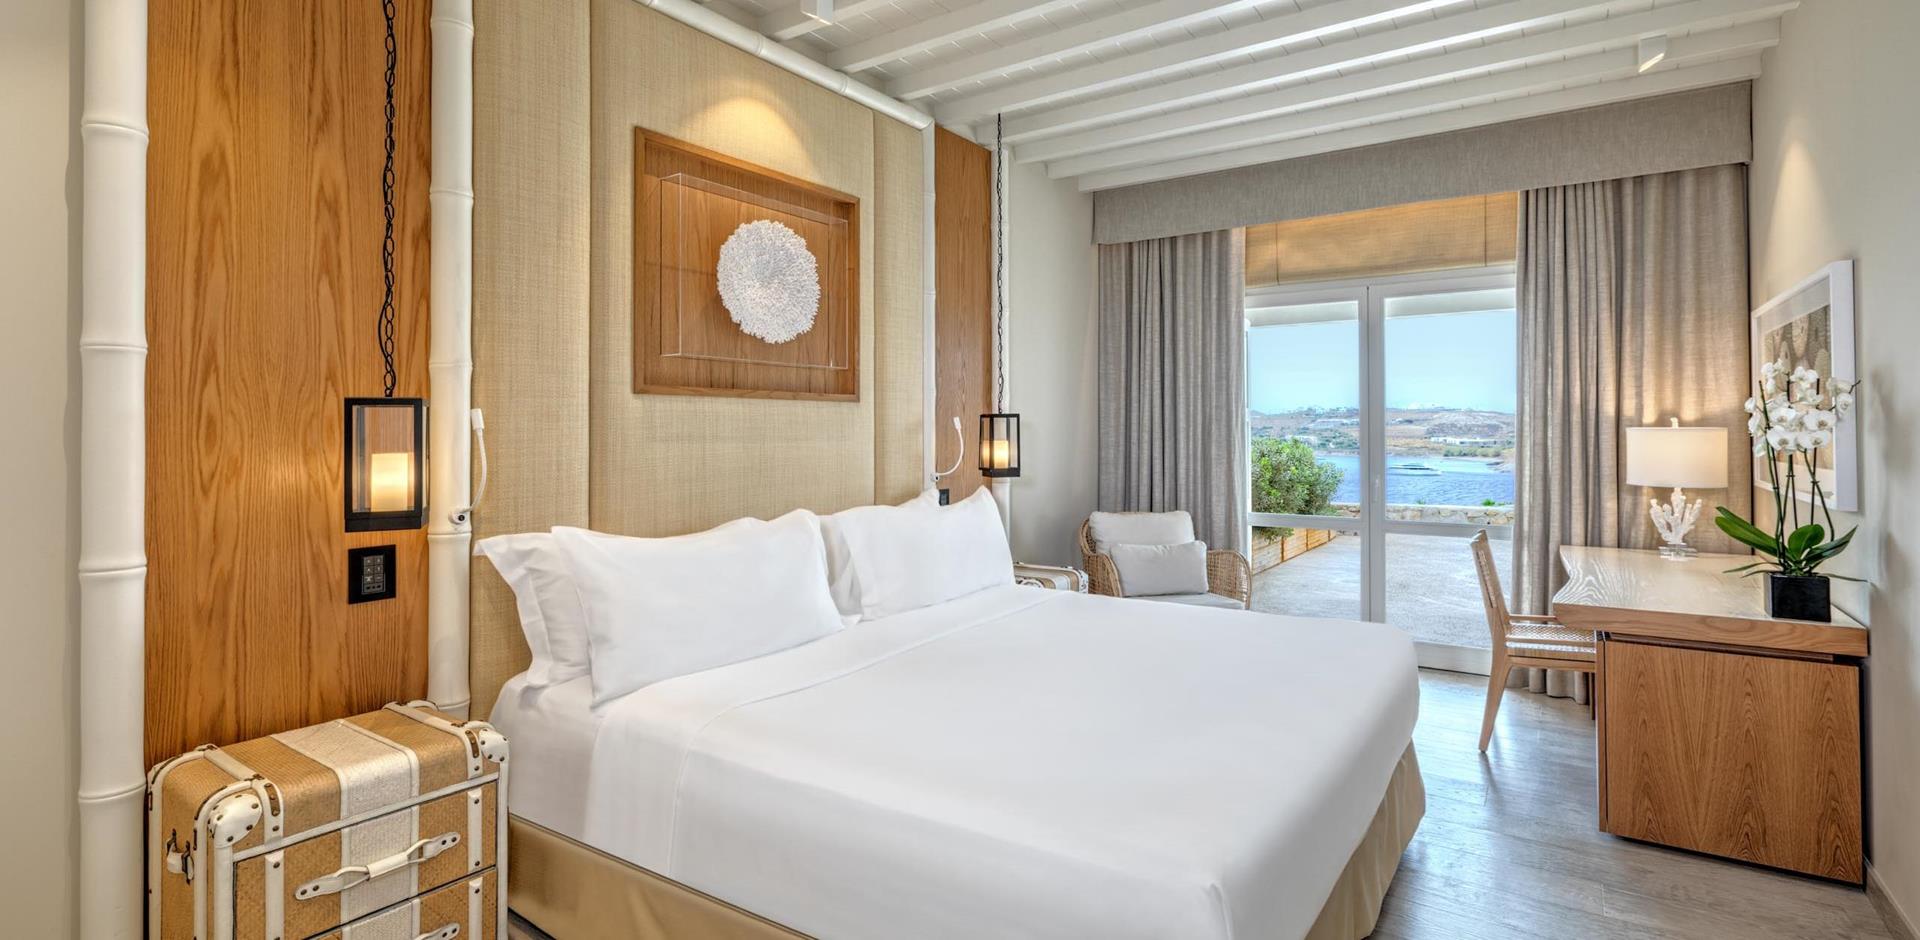 Deluxe Sea View Room, Santa Marina Mykonos